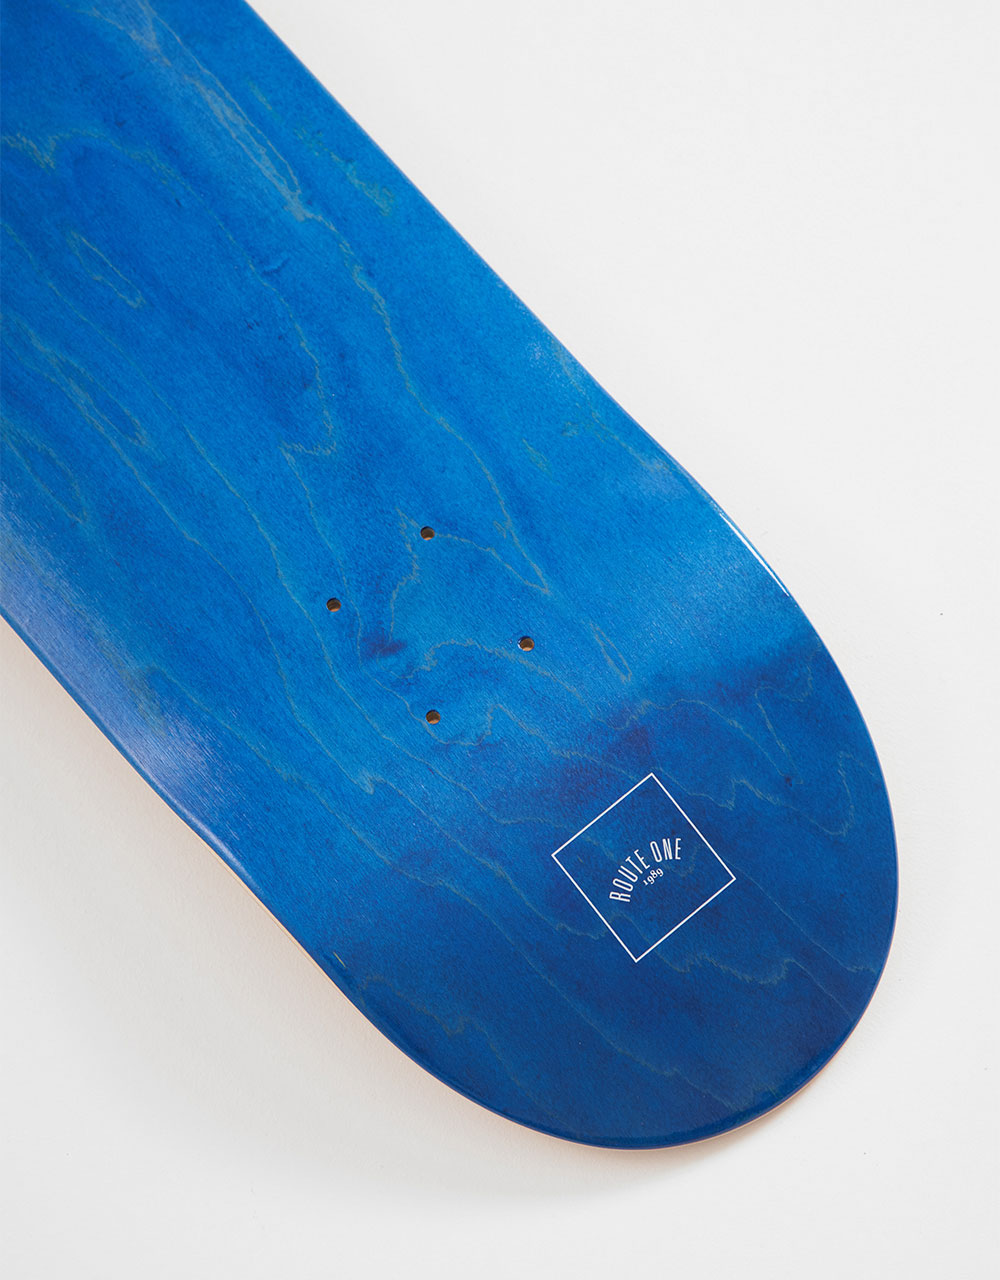 Route One Mini Logo 'OG Shape' Skateboard Deck - Blue/White